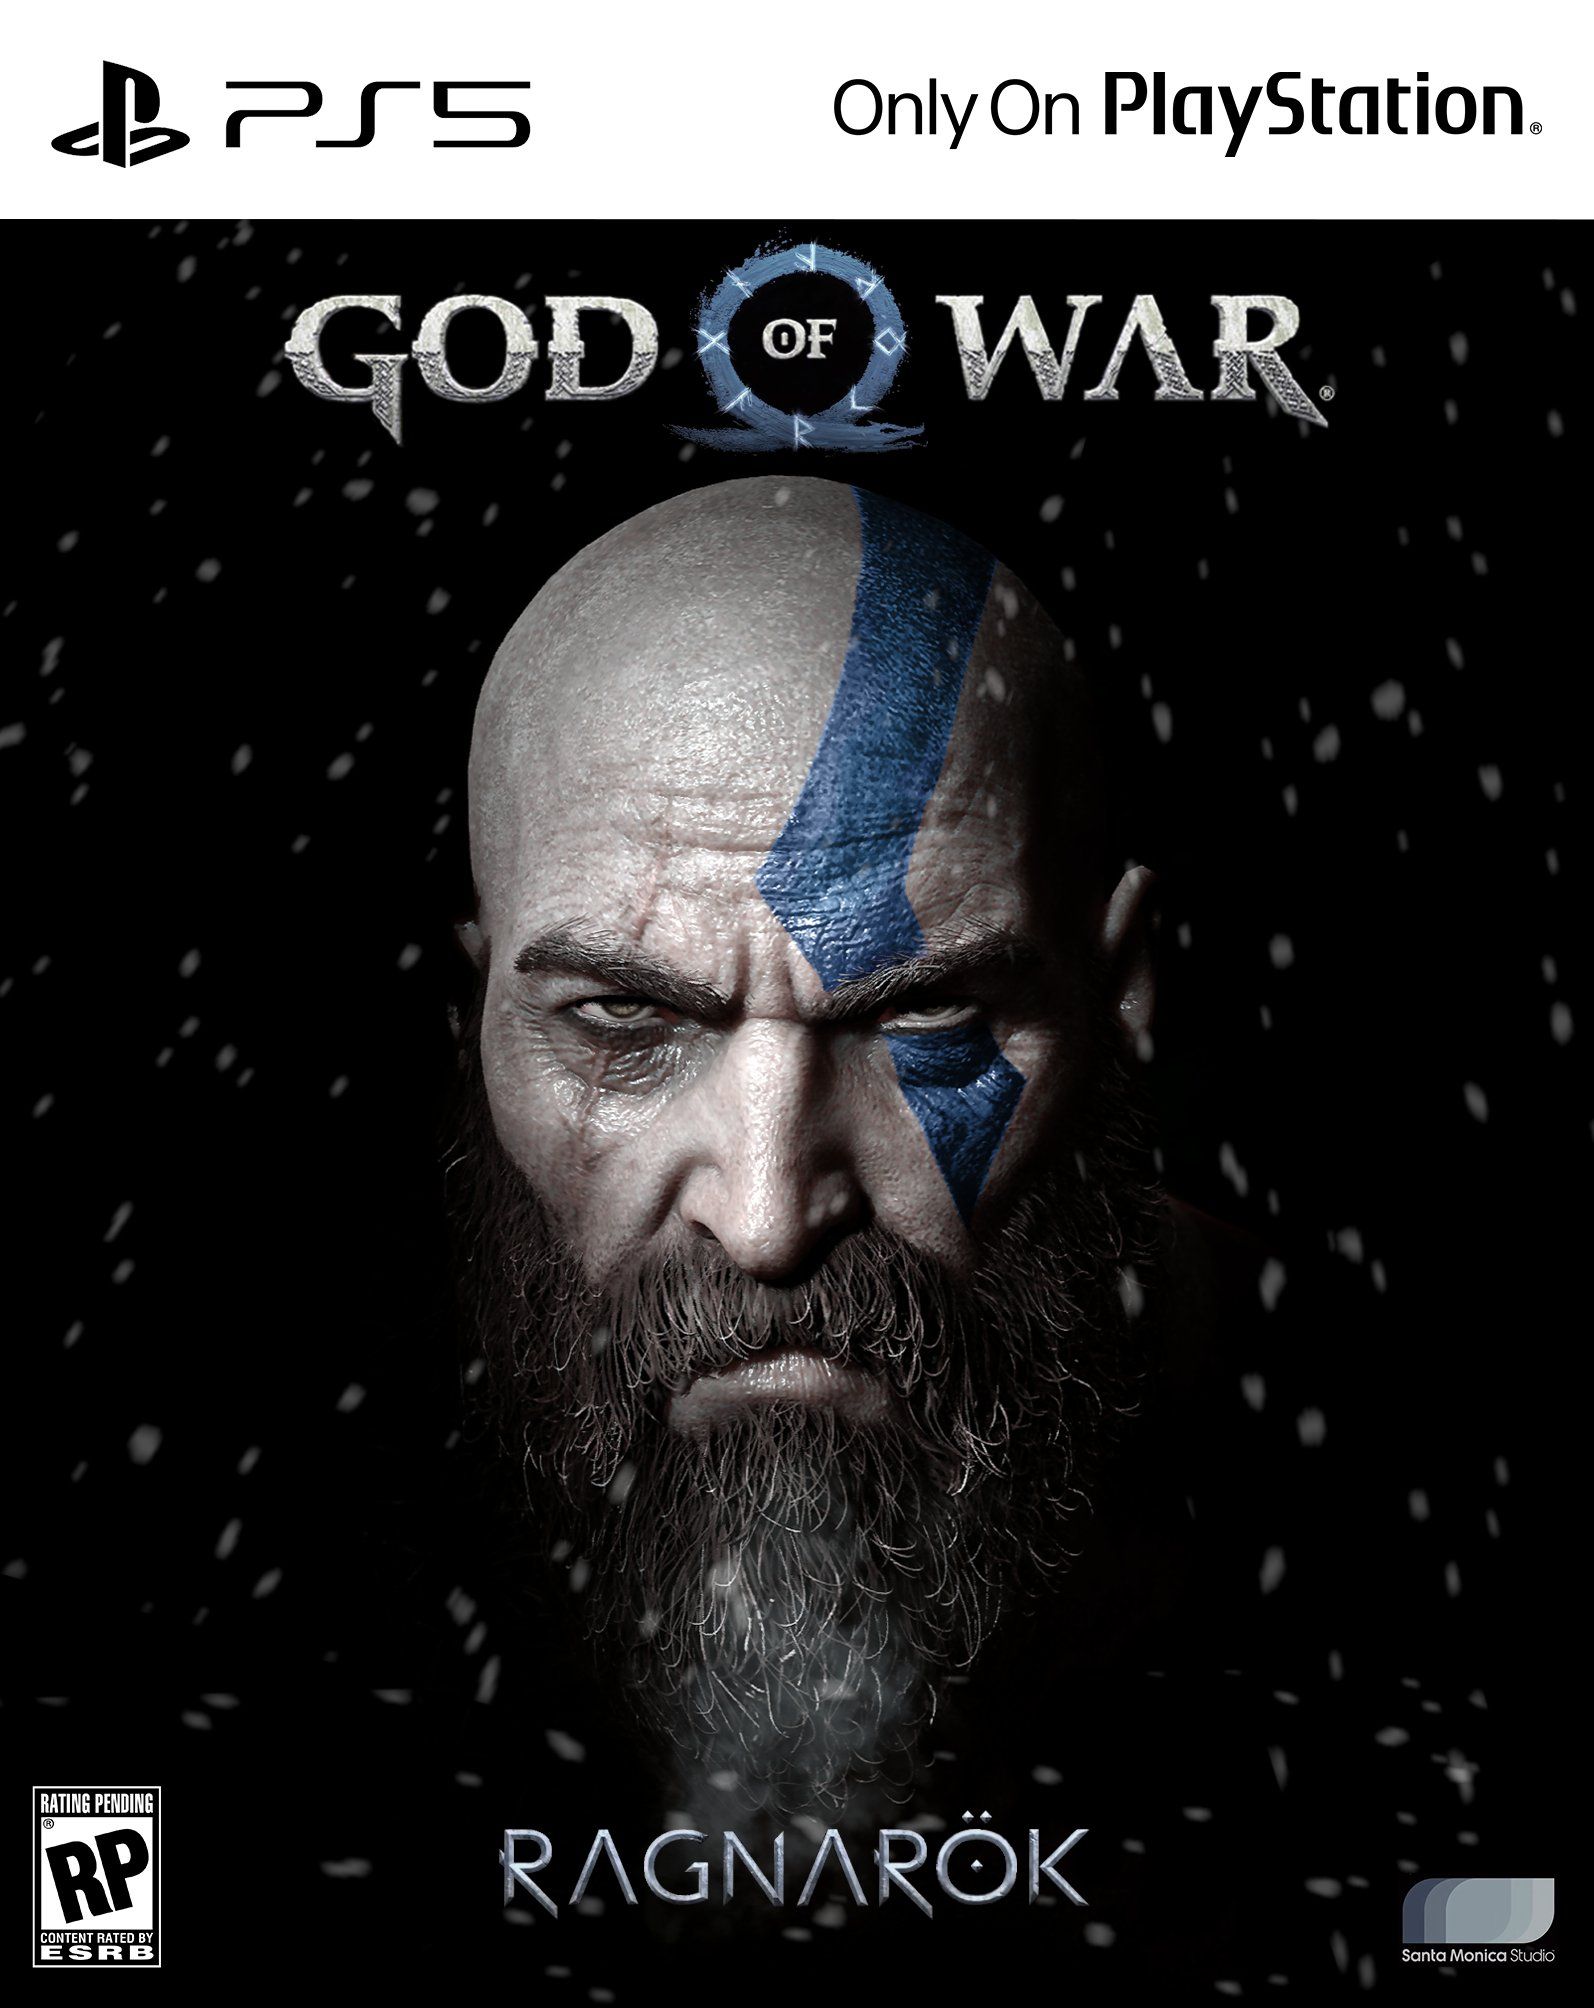 download god of war ragnarok game